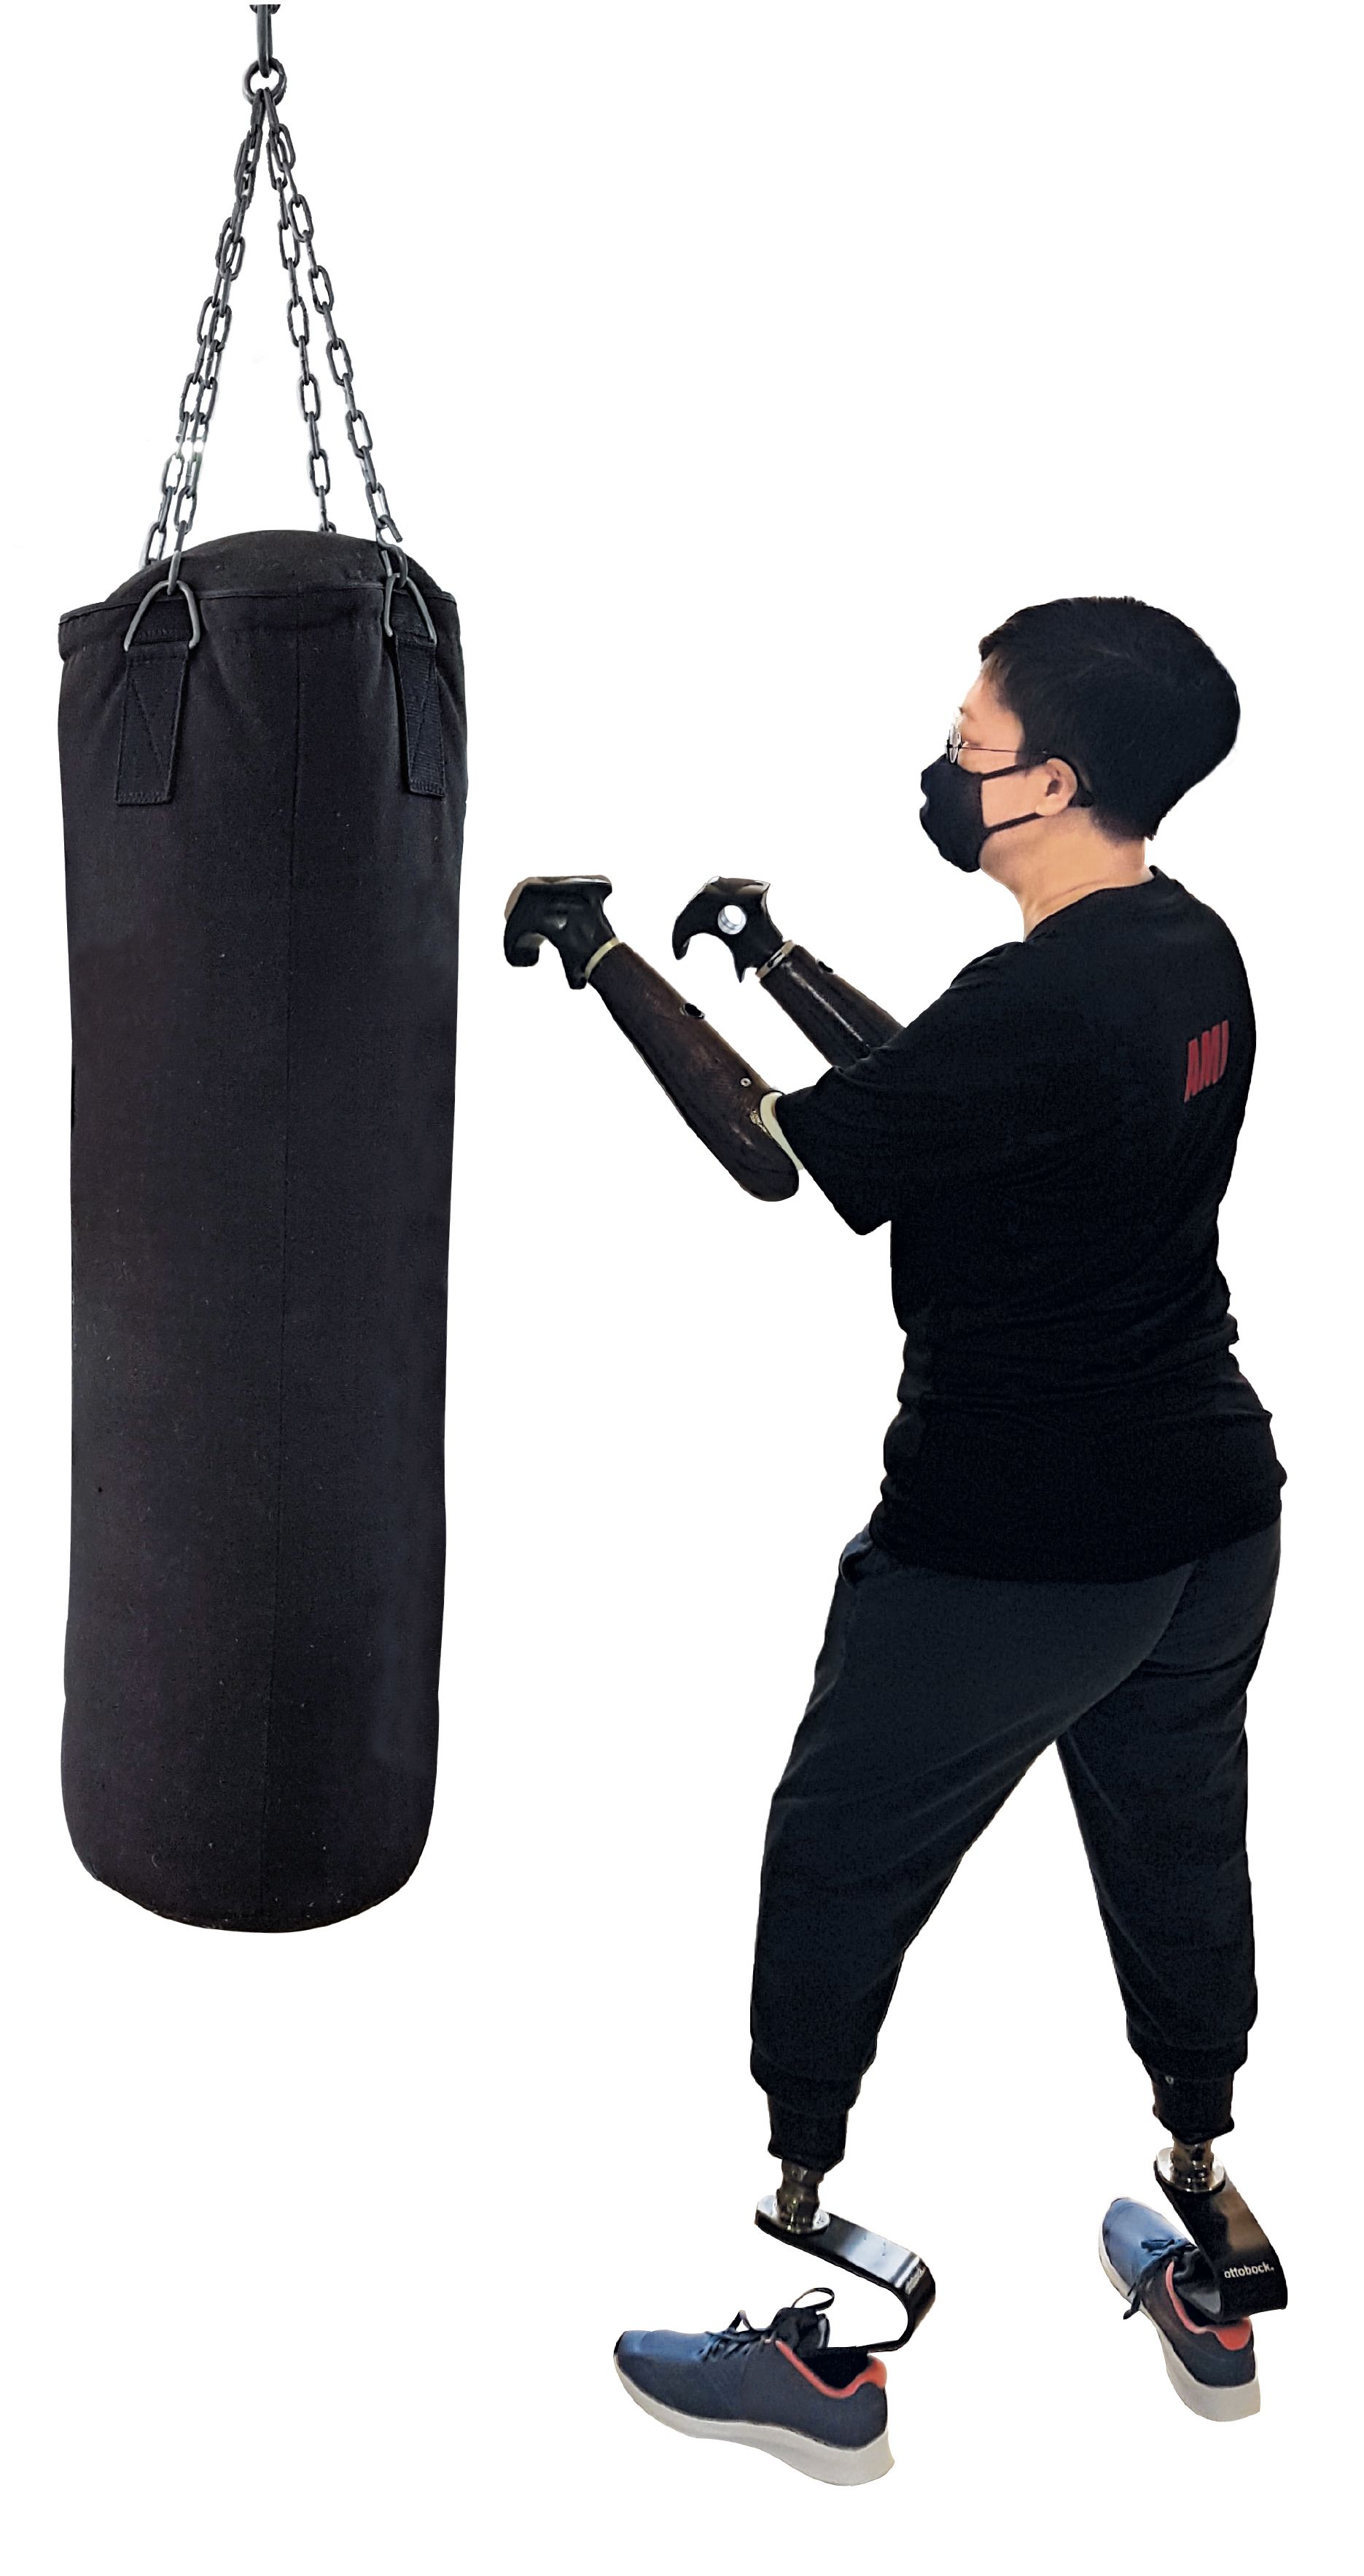 Ami Inthra trainiert mit Arm- und Beinprothesen an einem großen Boxsack. 